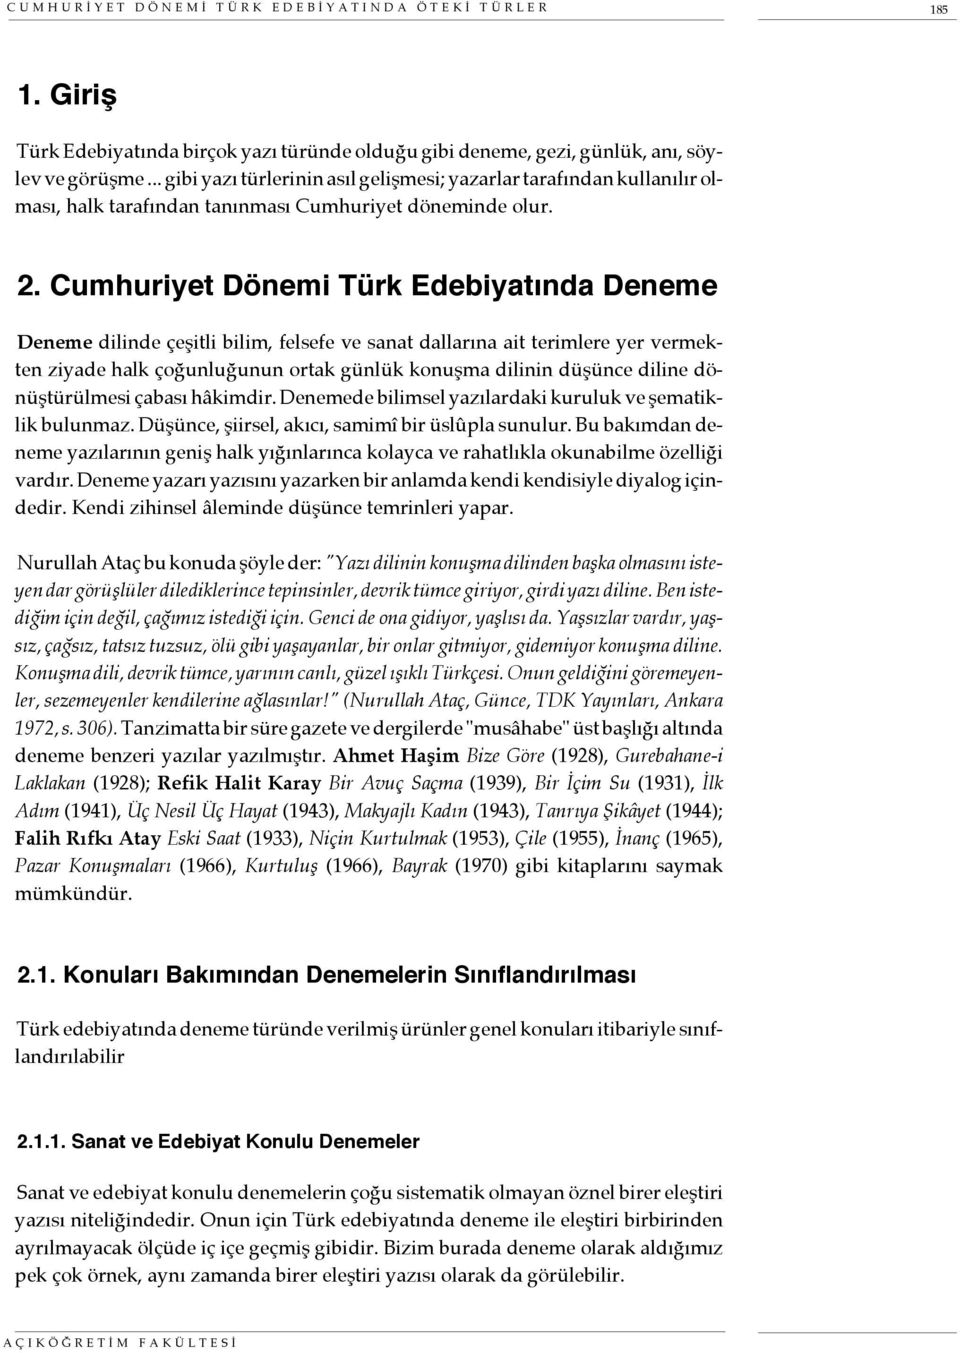 cumhuriyet donemi turk edebiyatinda oteki turler pdf free download